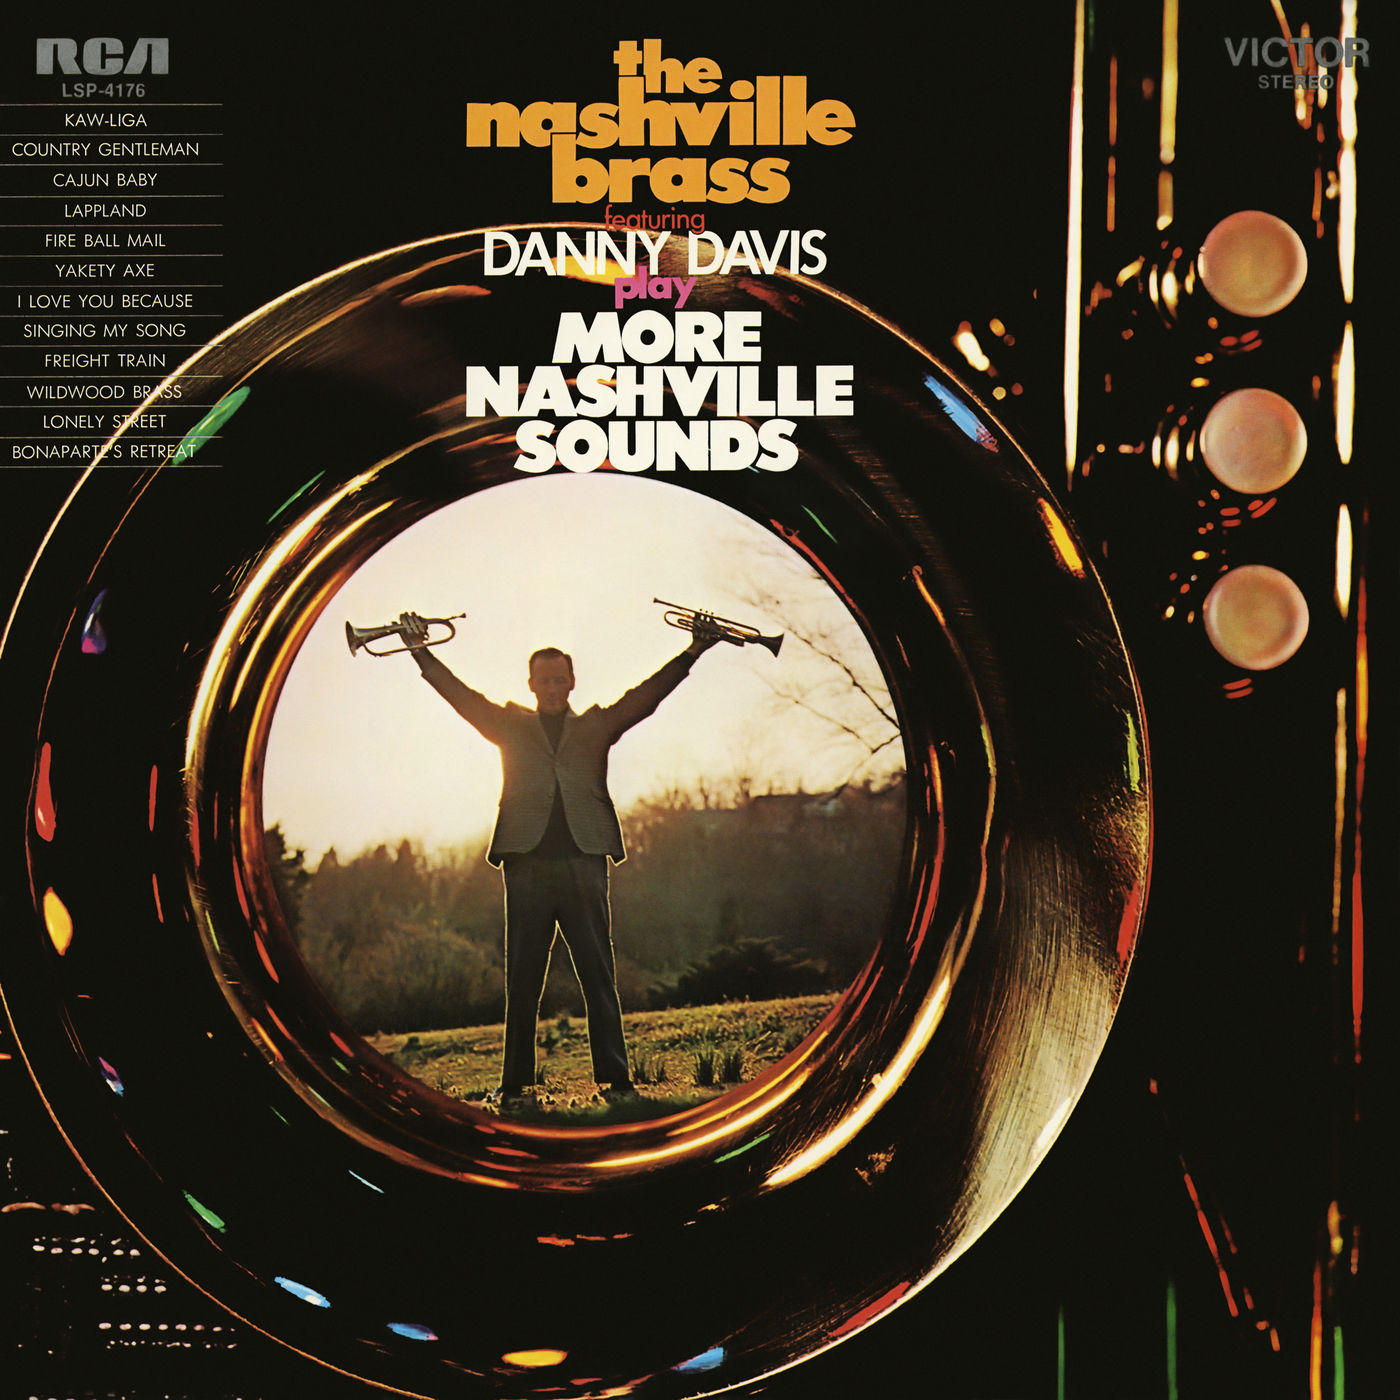 Danny Davis & The Nashville Brass – Play More Nashville Sounds